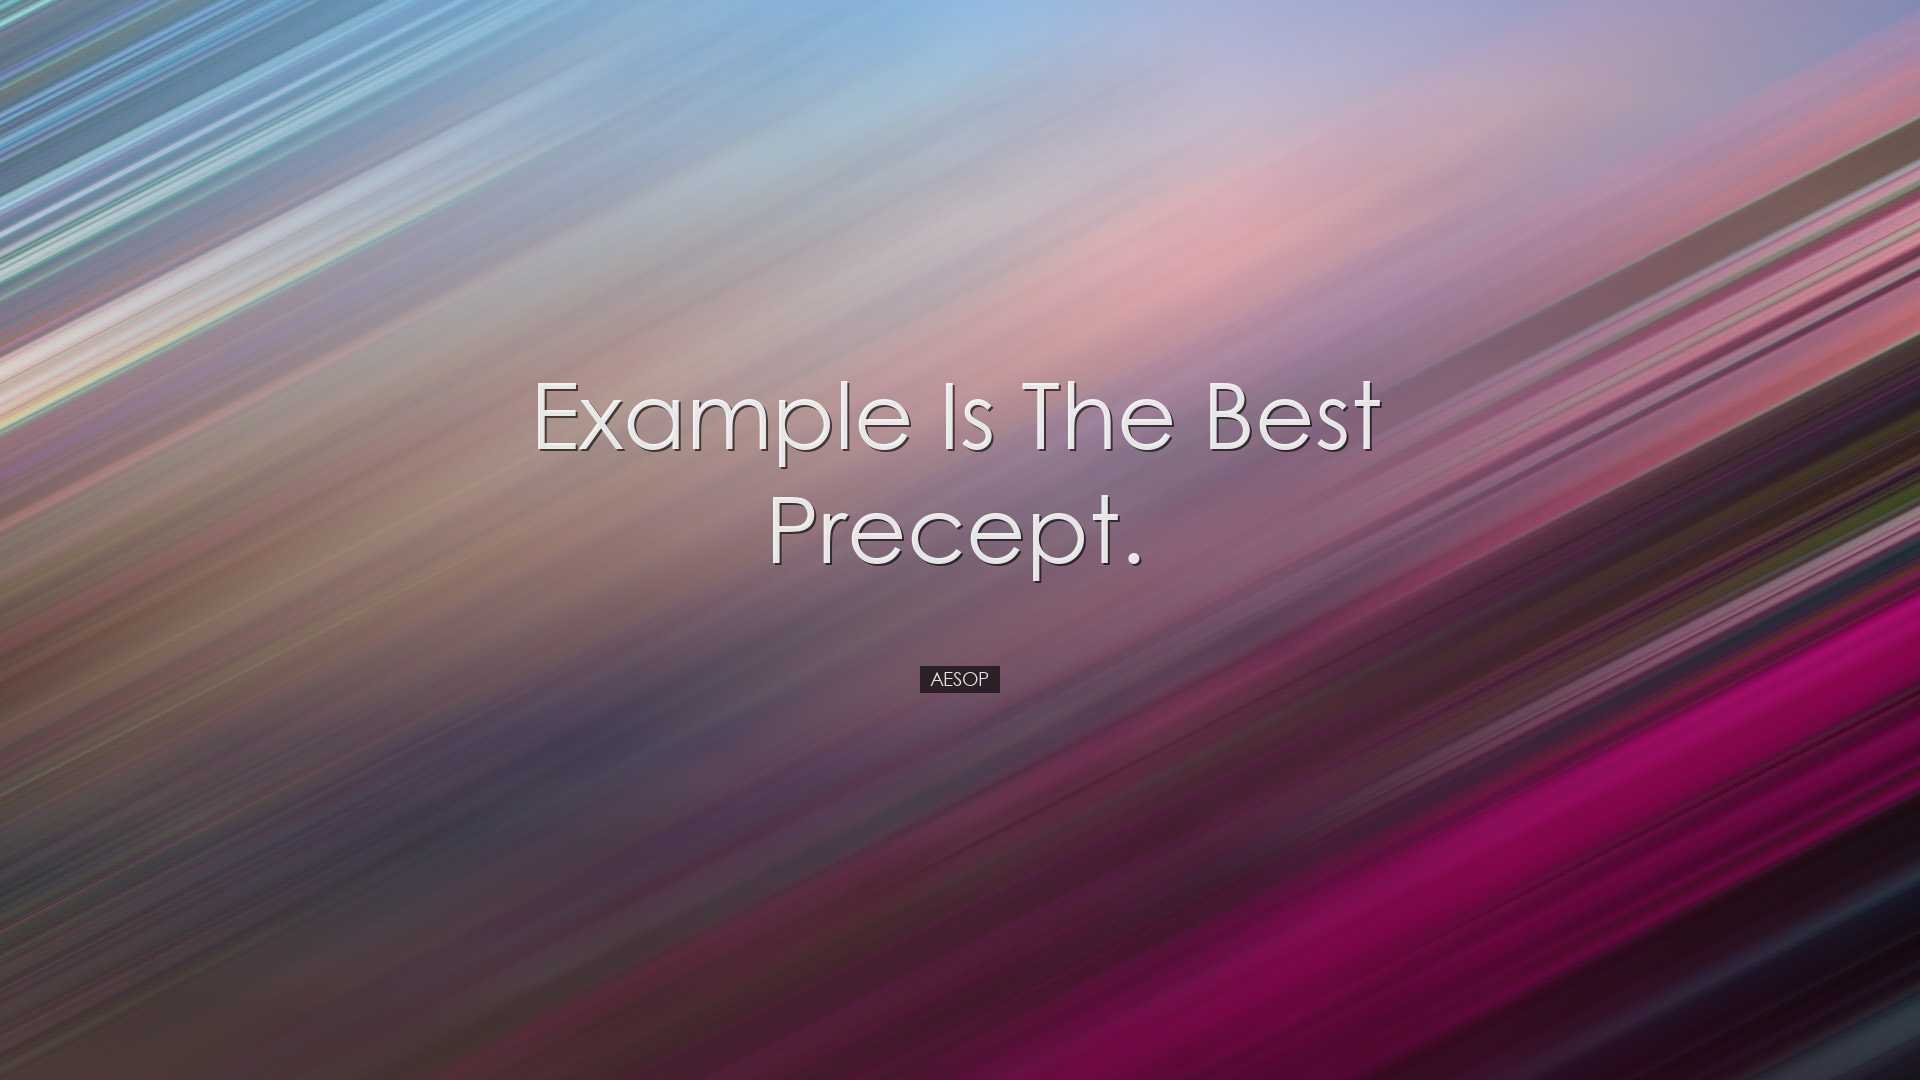 Example is the best precept. - Aesop